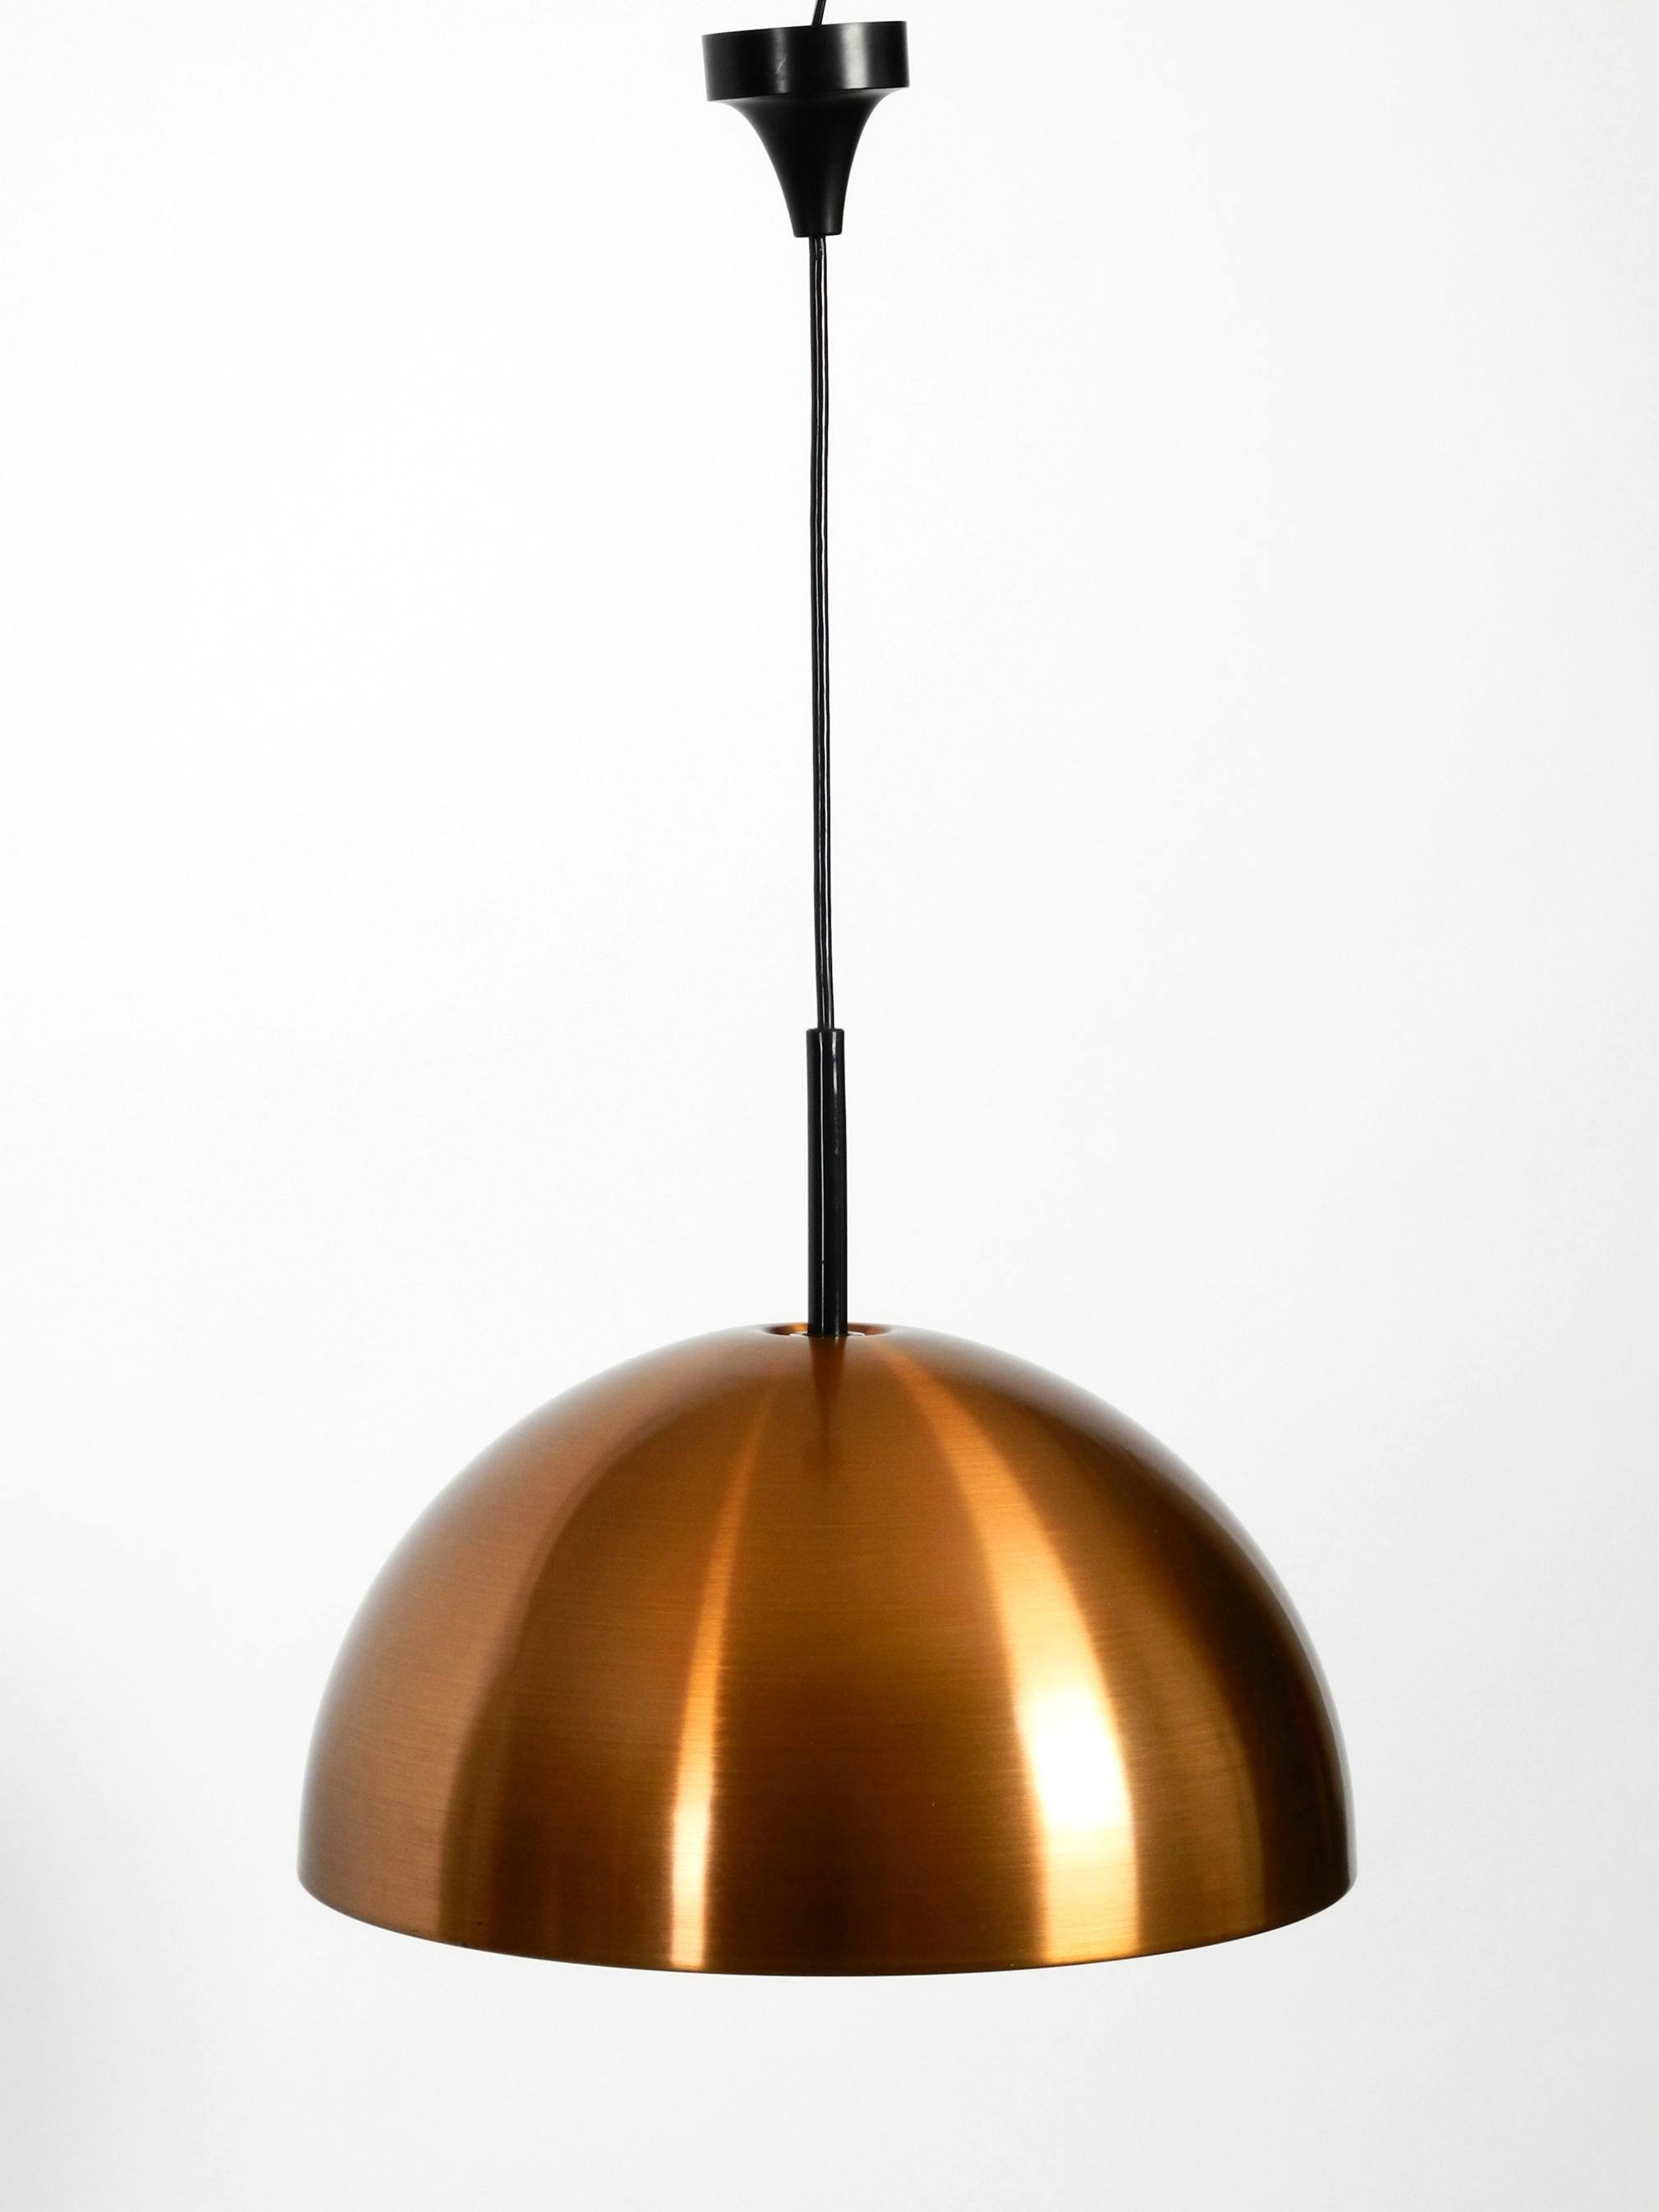 Fin du 20e siècle Lampe suspendue originale de l'ère spatiale des années 1970 avec abat-jour en cuivre en état neuf en vente